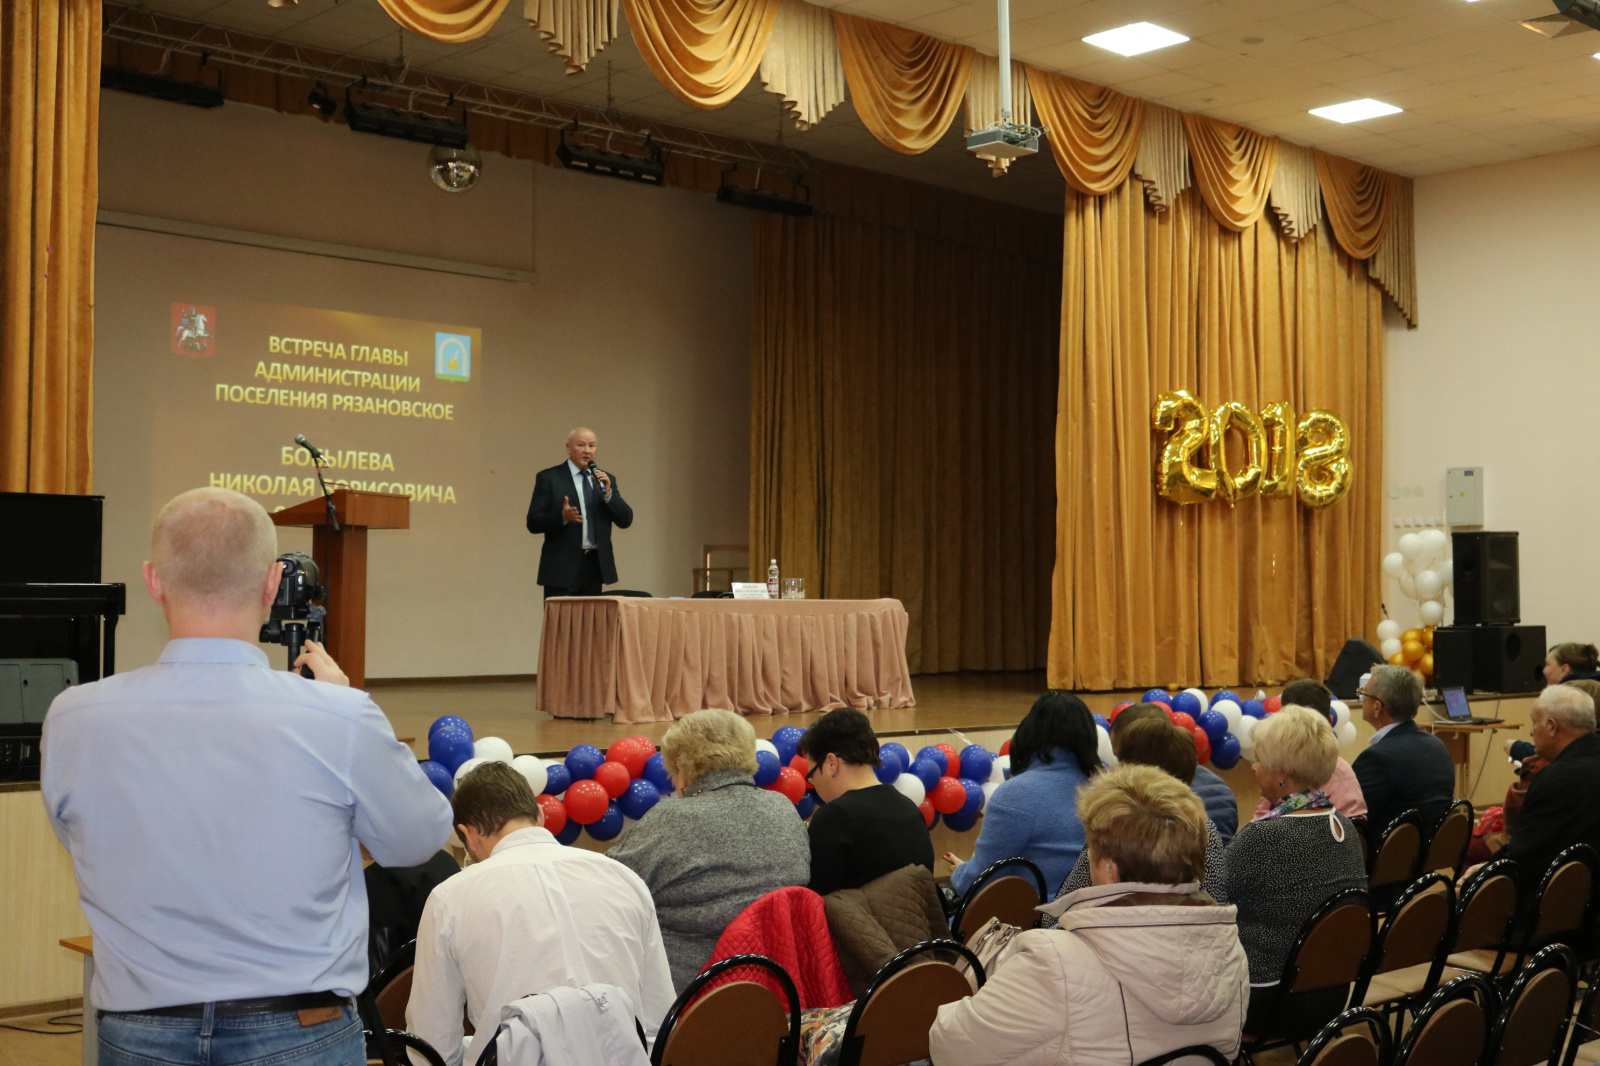 Встреча главы администрации с жителями поселения Рязановское